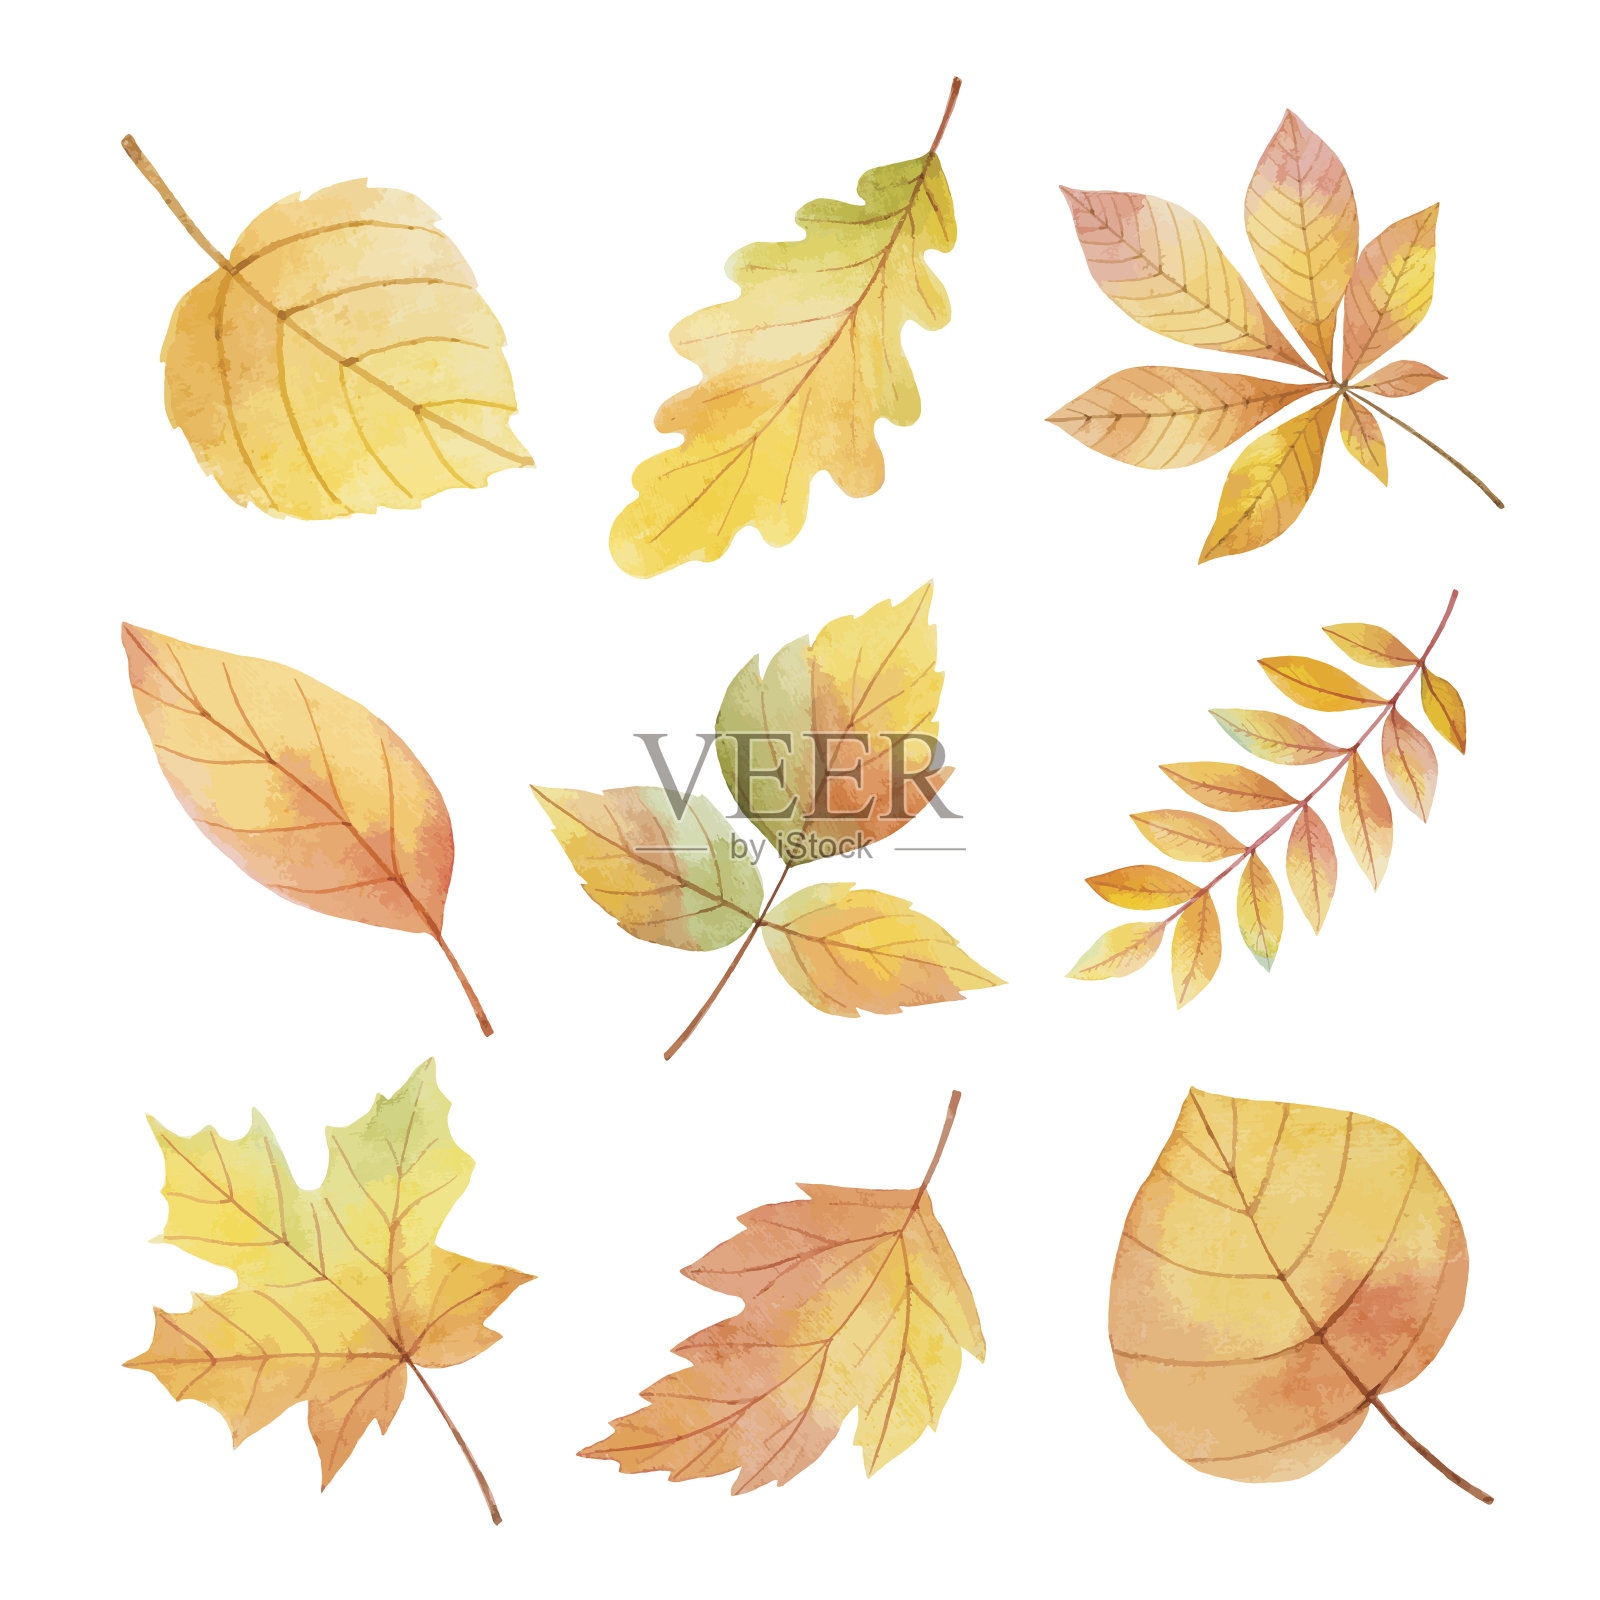 水彩画把秋叶画在白色的背景上。设计元素图片